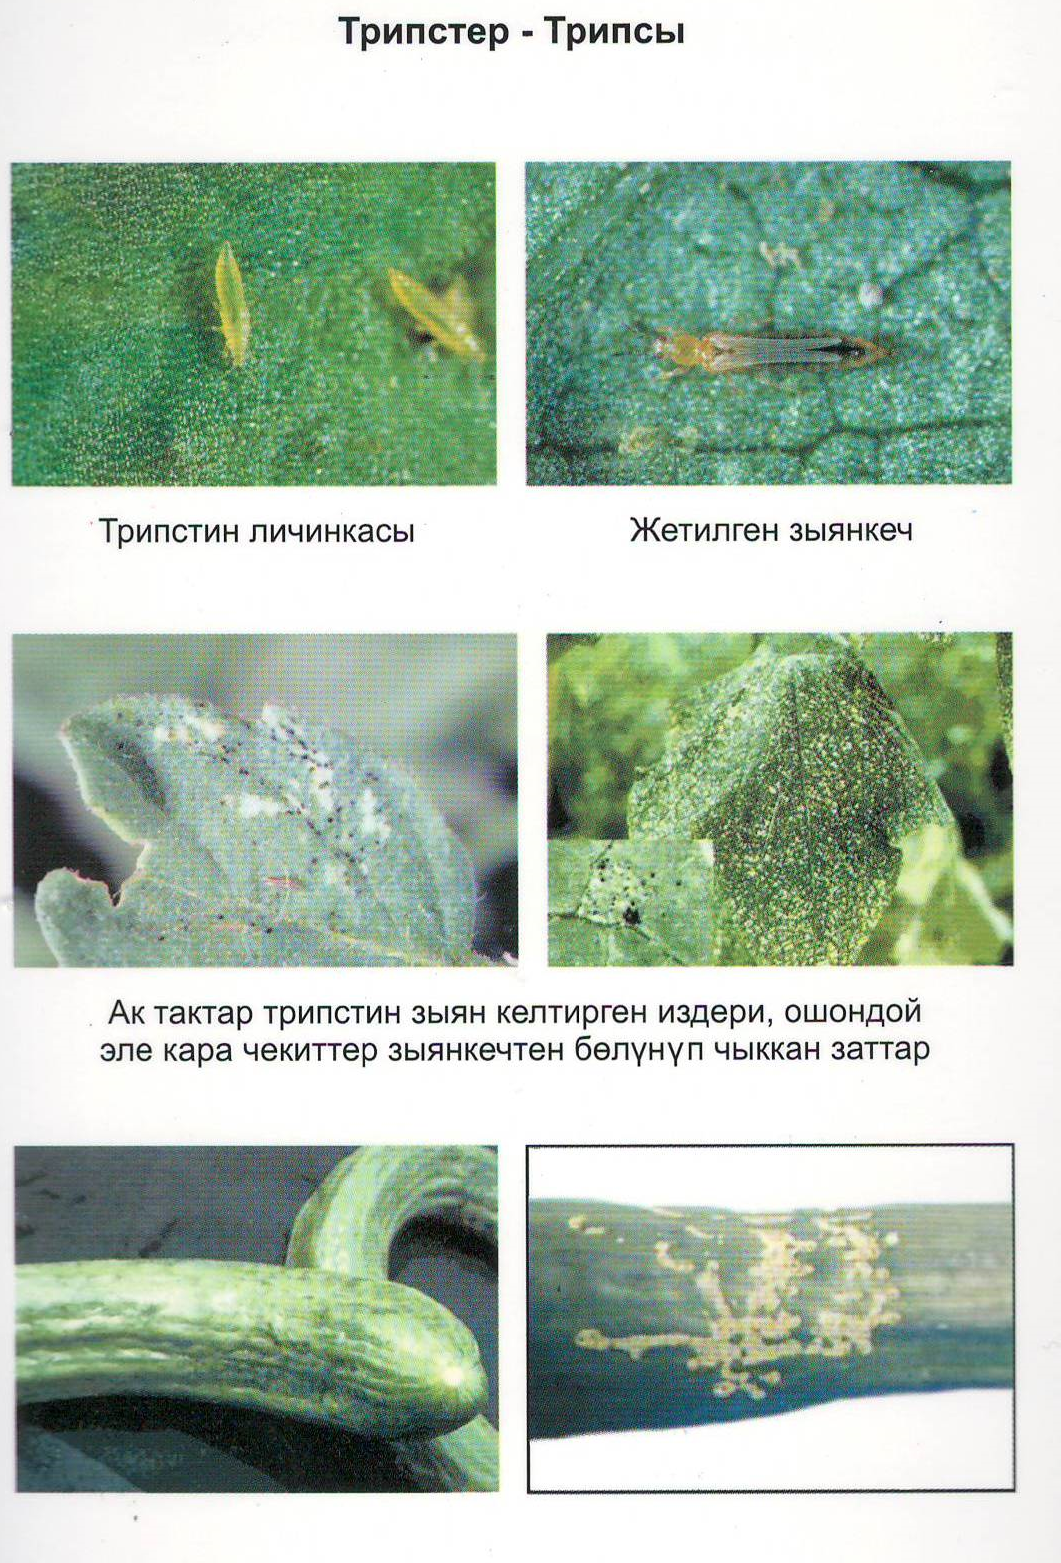 Болезни огурцов по листьям описание с фотографиями и способы лечения